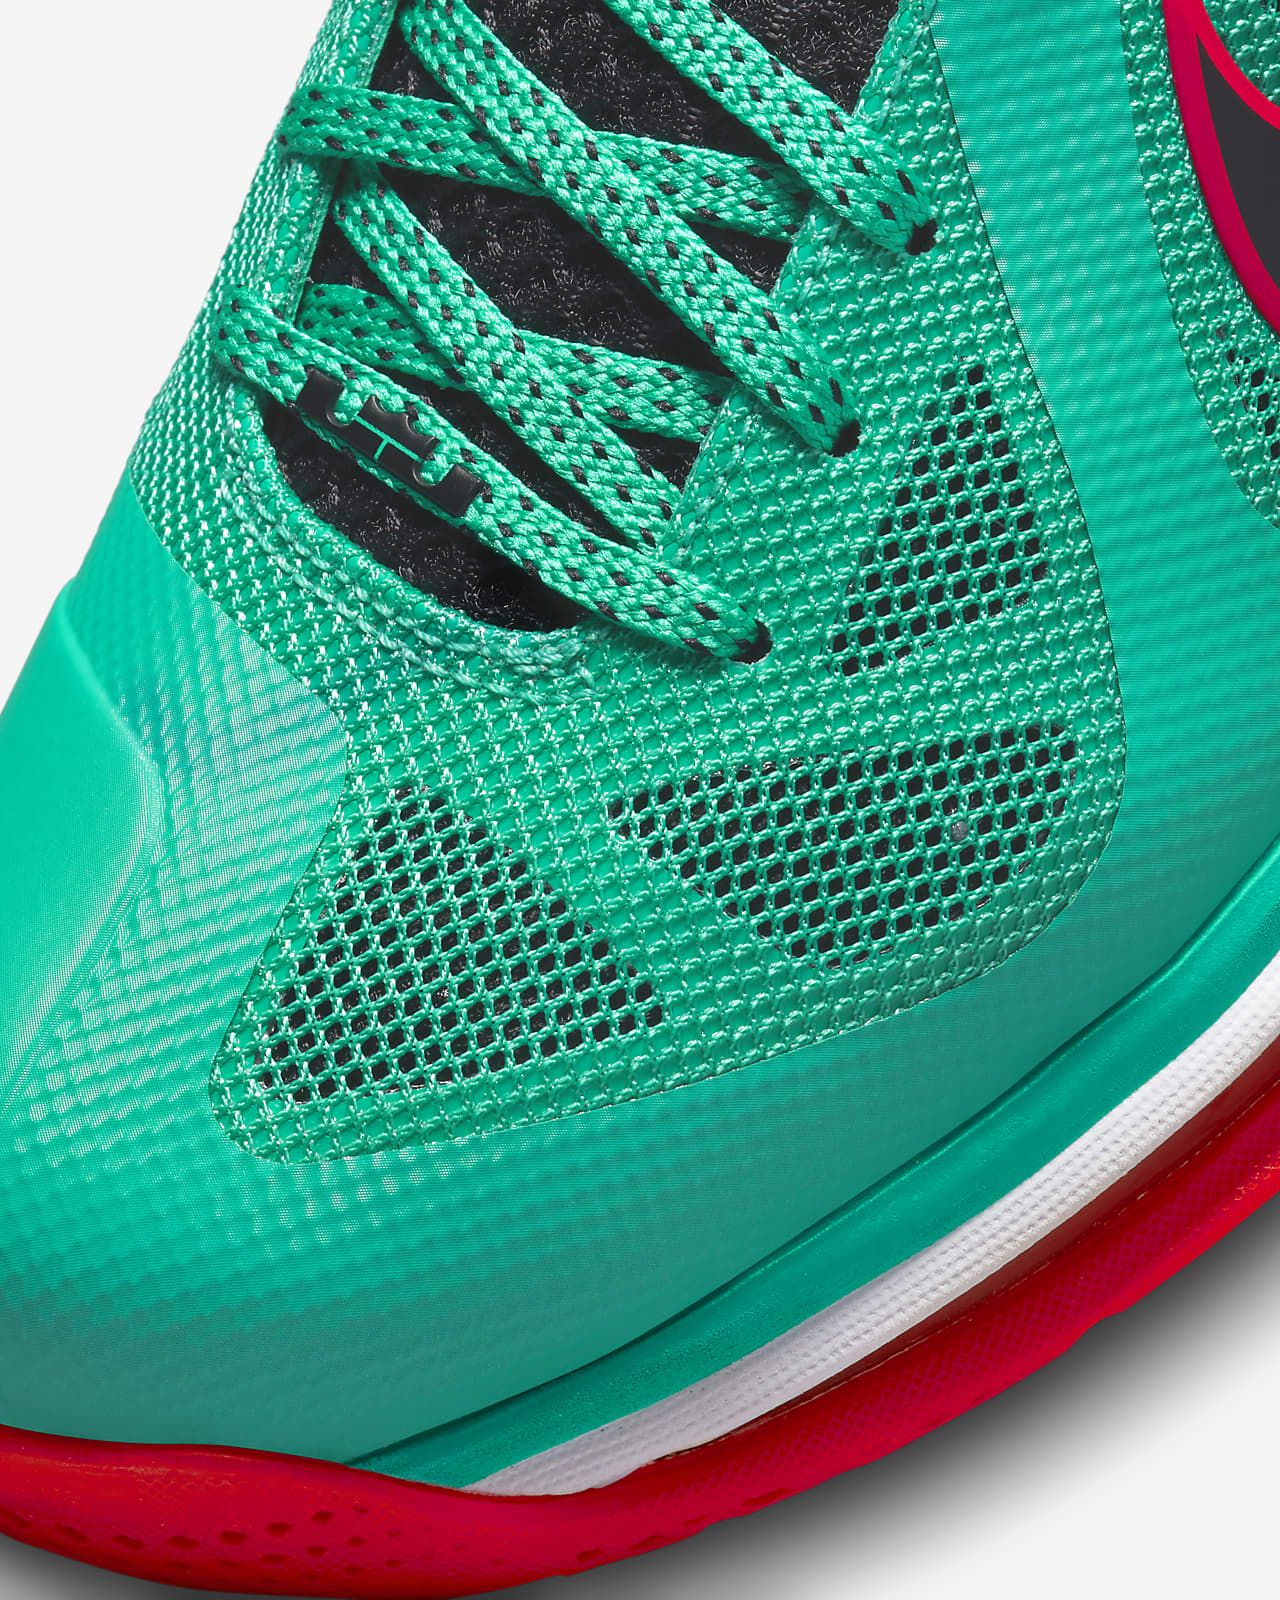 Verrassend genoeg Verenigde Staten van Amerika Aanvankelijk Nike Lebron 9 Low Men's Shoes. Nike.com